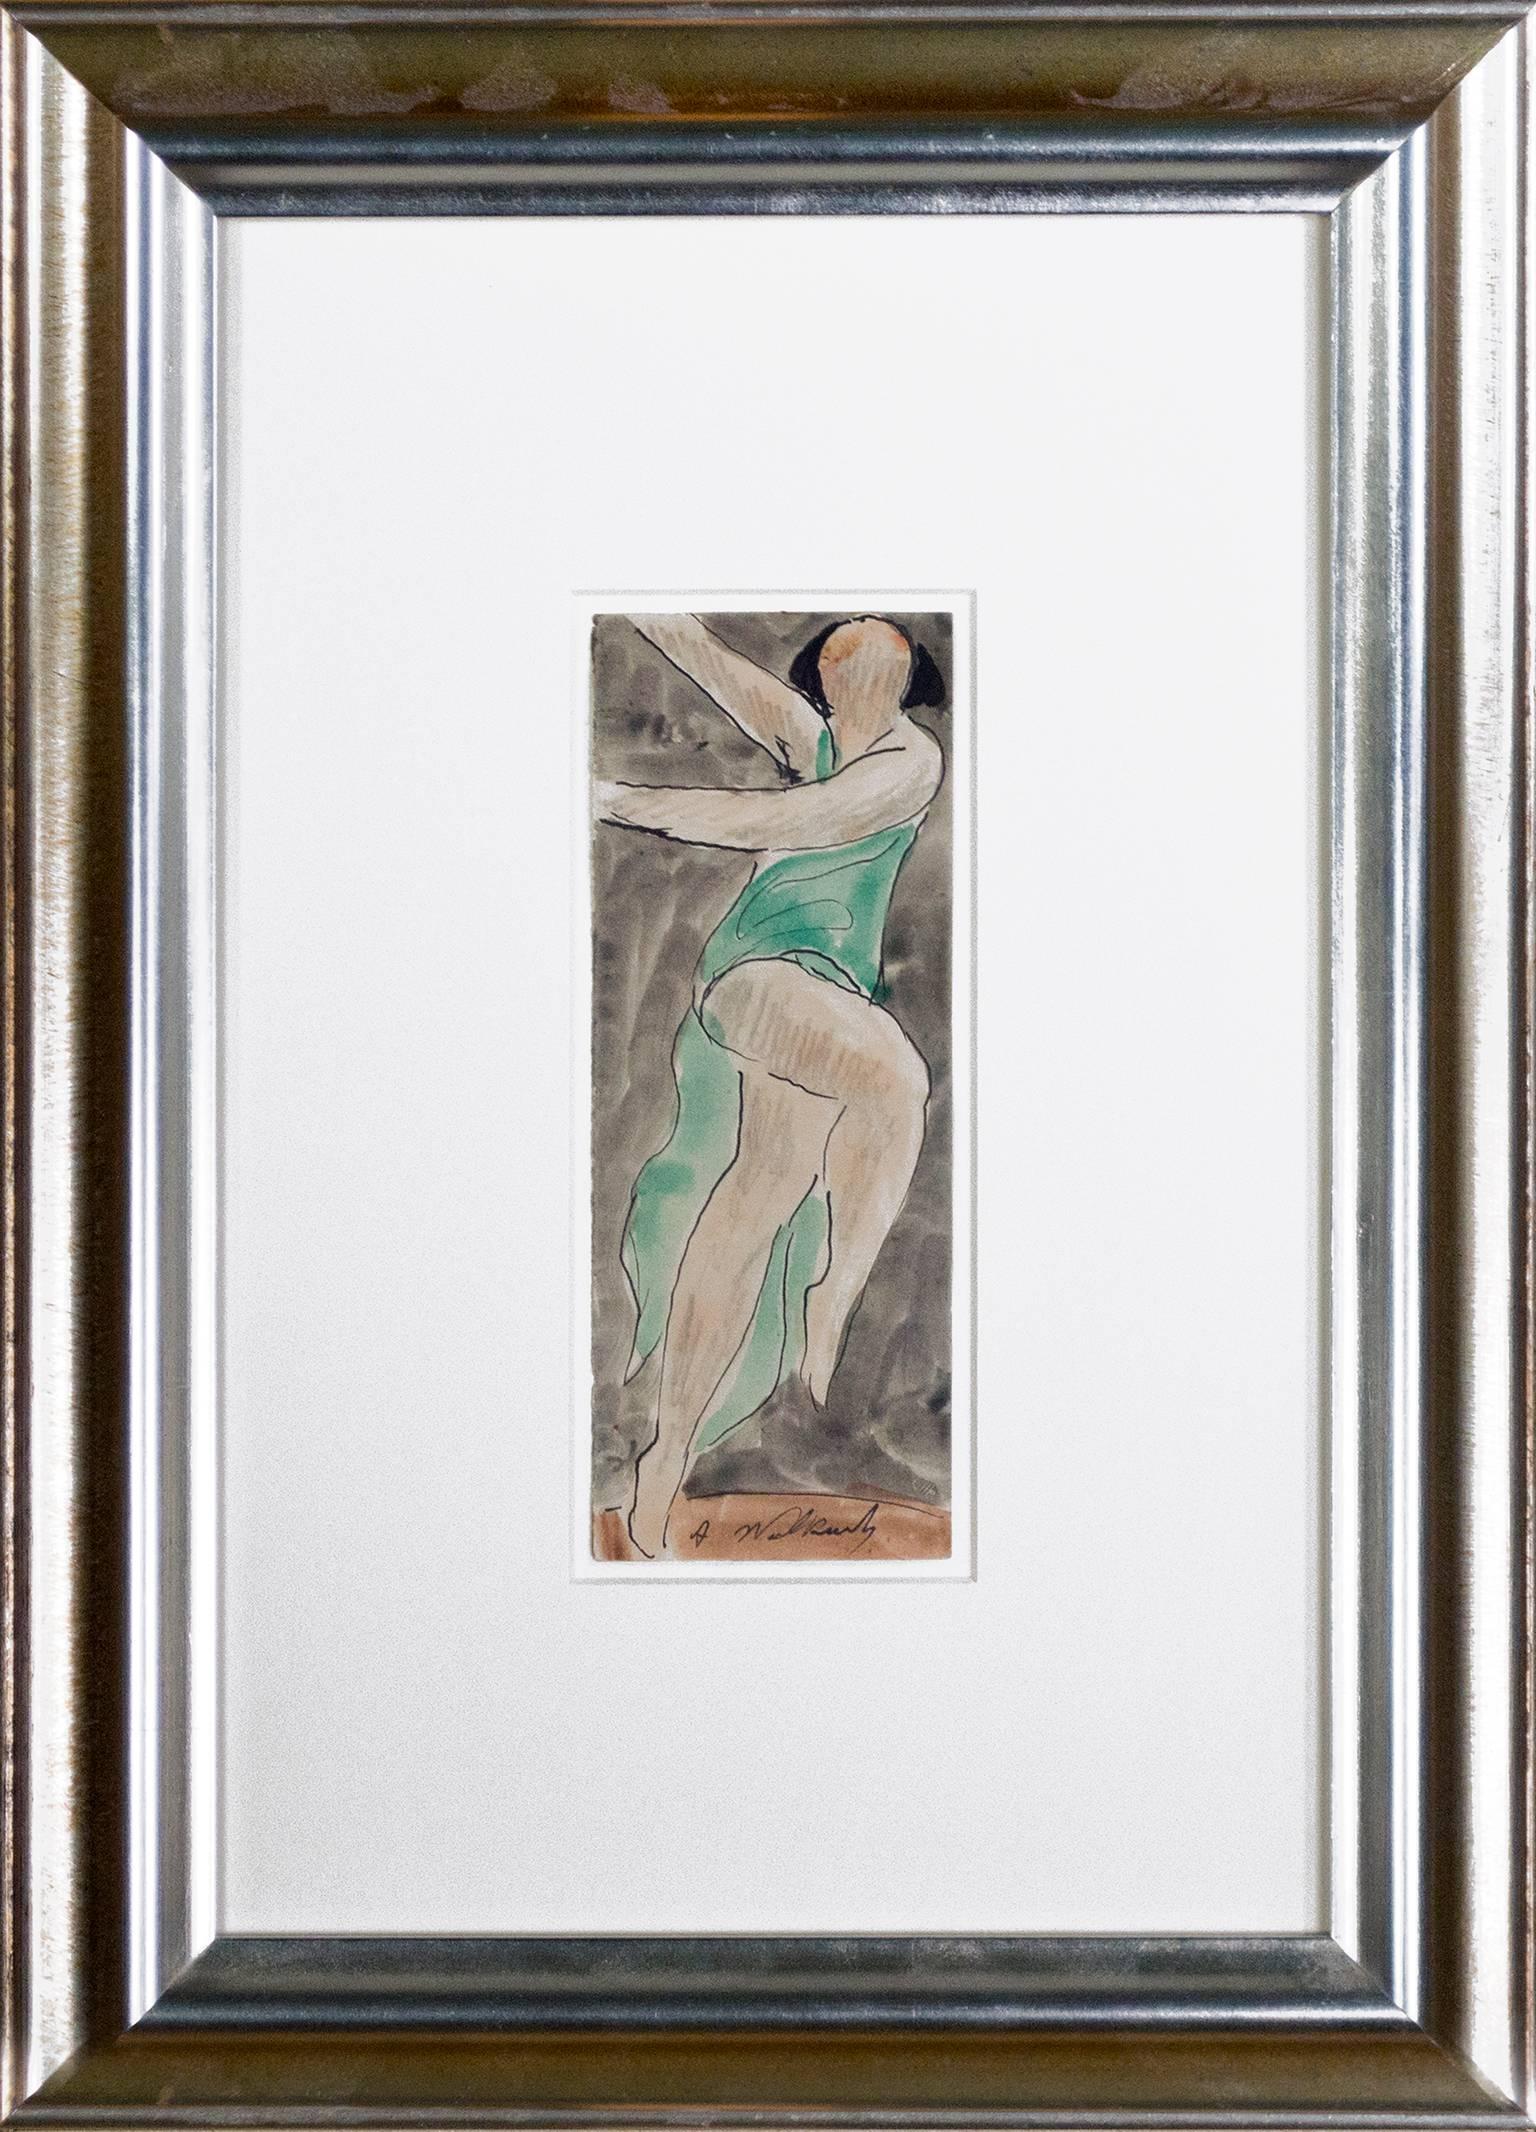 "Isadora Duncan Dancing #3" est une œuvre originale réalisée à l'encre et à l'aquarelle sur papier crème par Abraham Walkowitz. L'artiste a signé l'œuvre en bas au centre. Le dessin représente Isadora Duncan, célèbre danseuse américaine. 

7" x 2